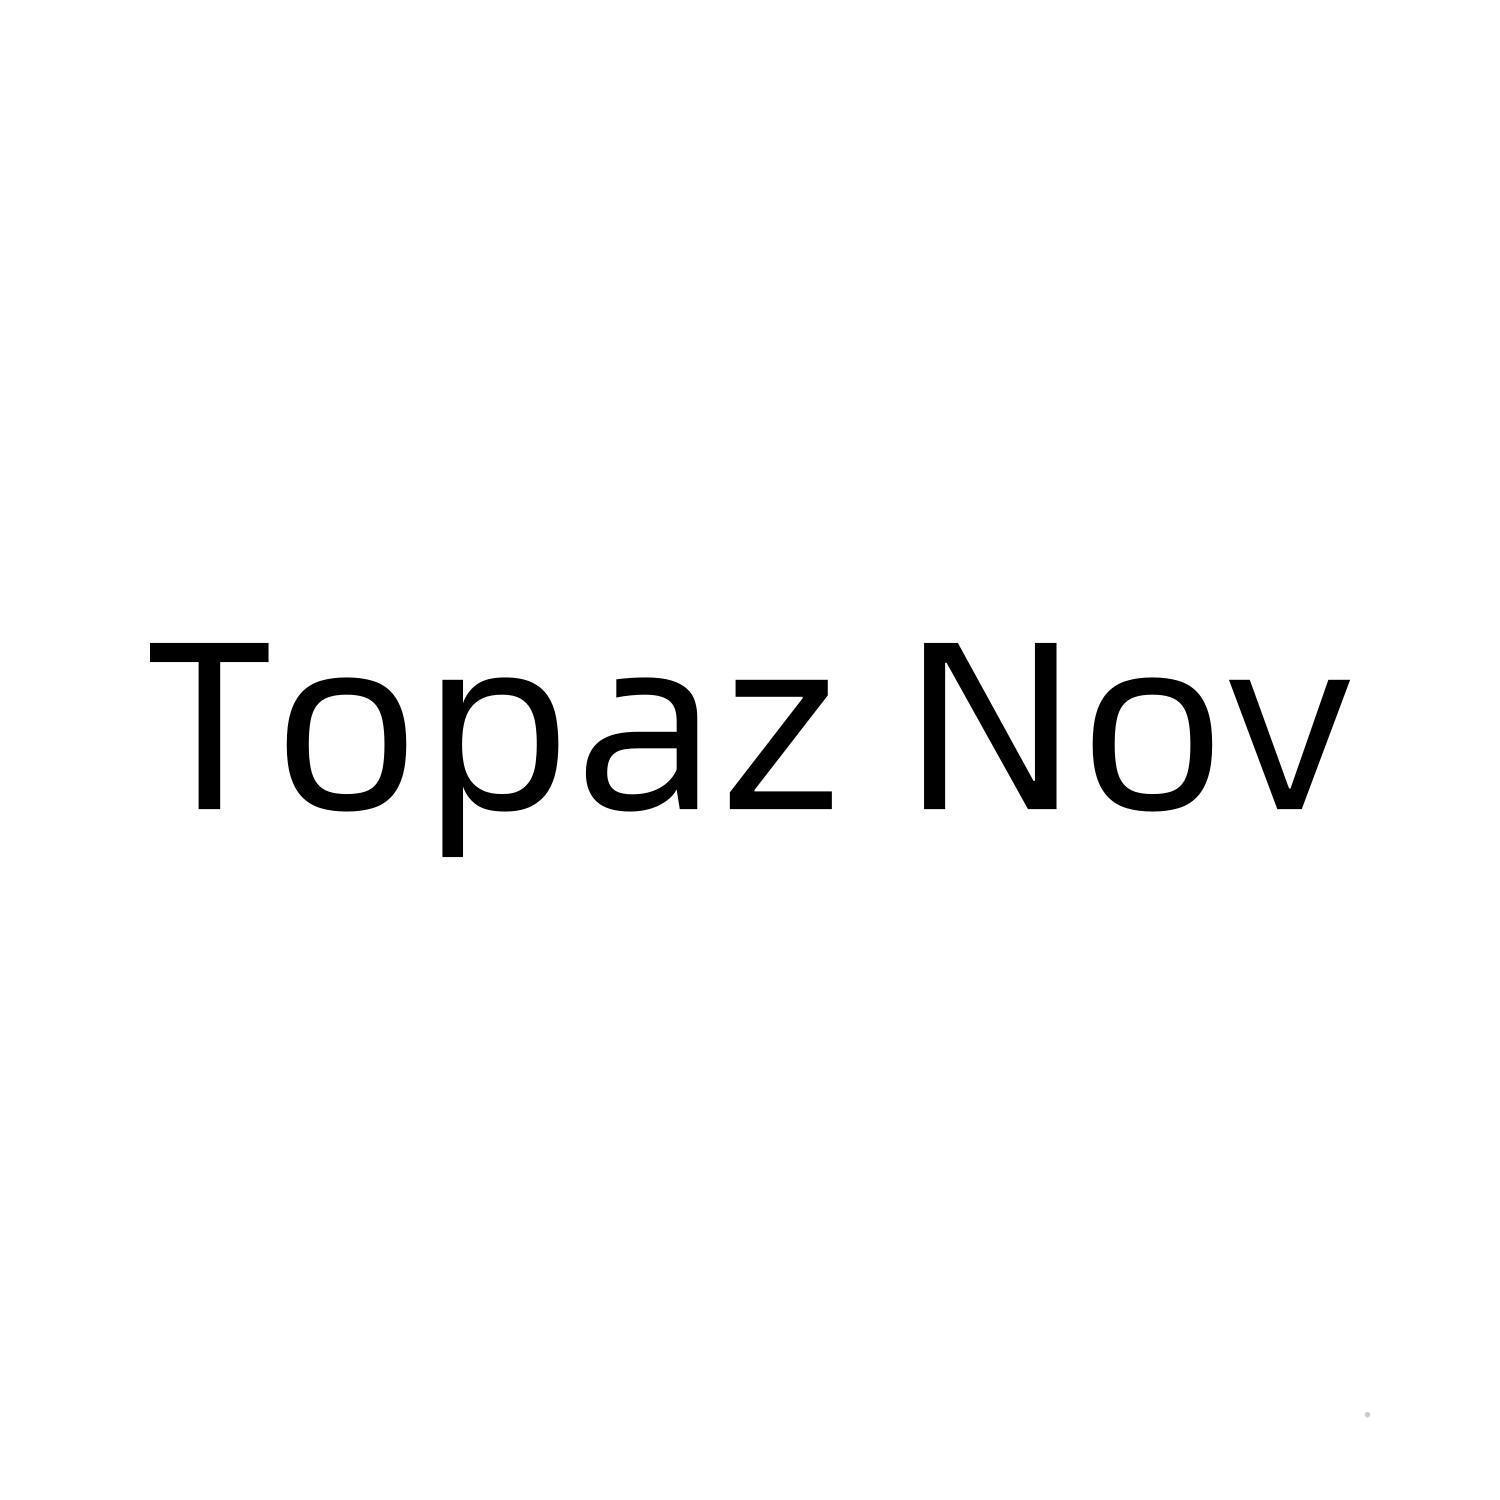 TOPAZ NOV